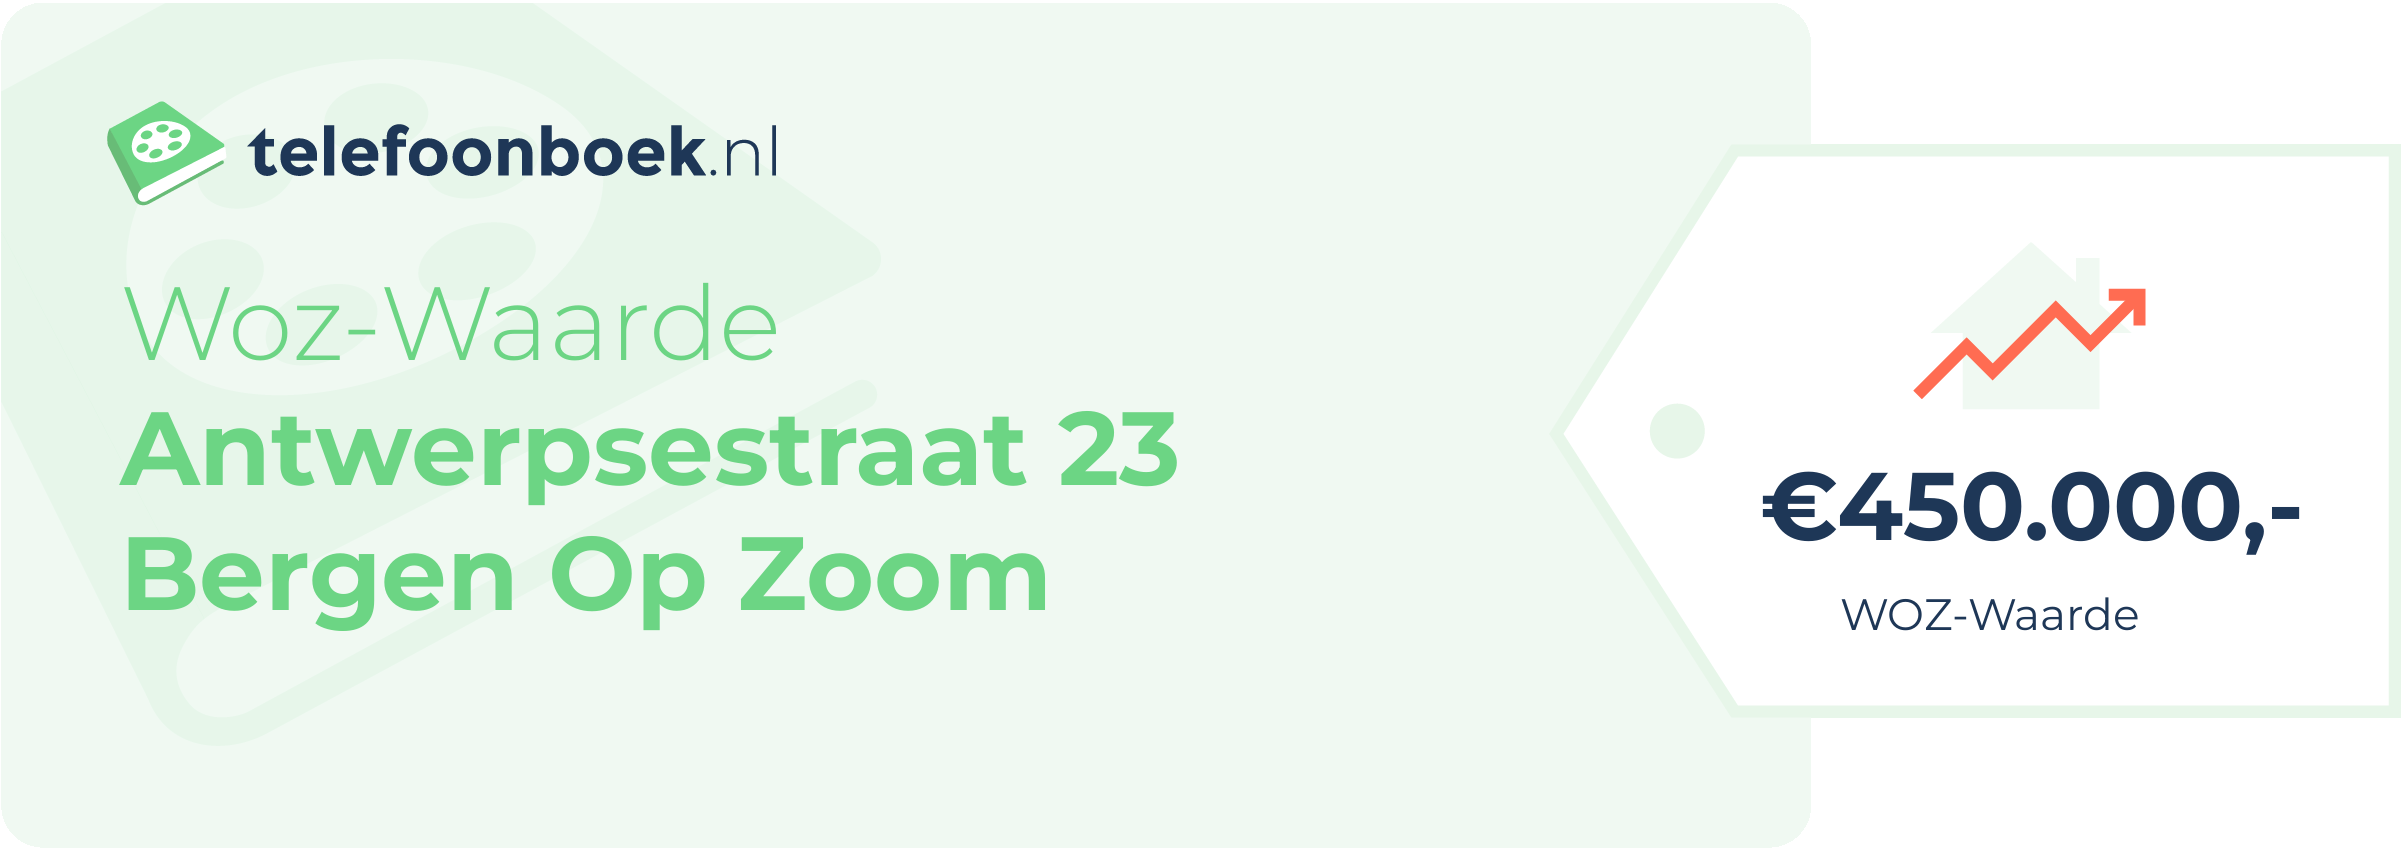 WOZ-waarde Antwerpsestraat 23 Bergen Op Zoom